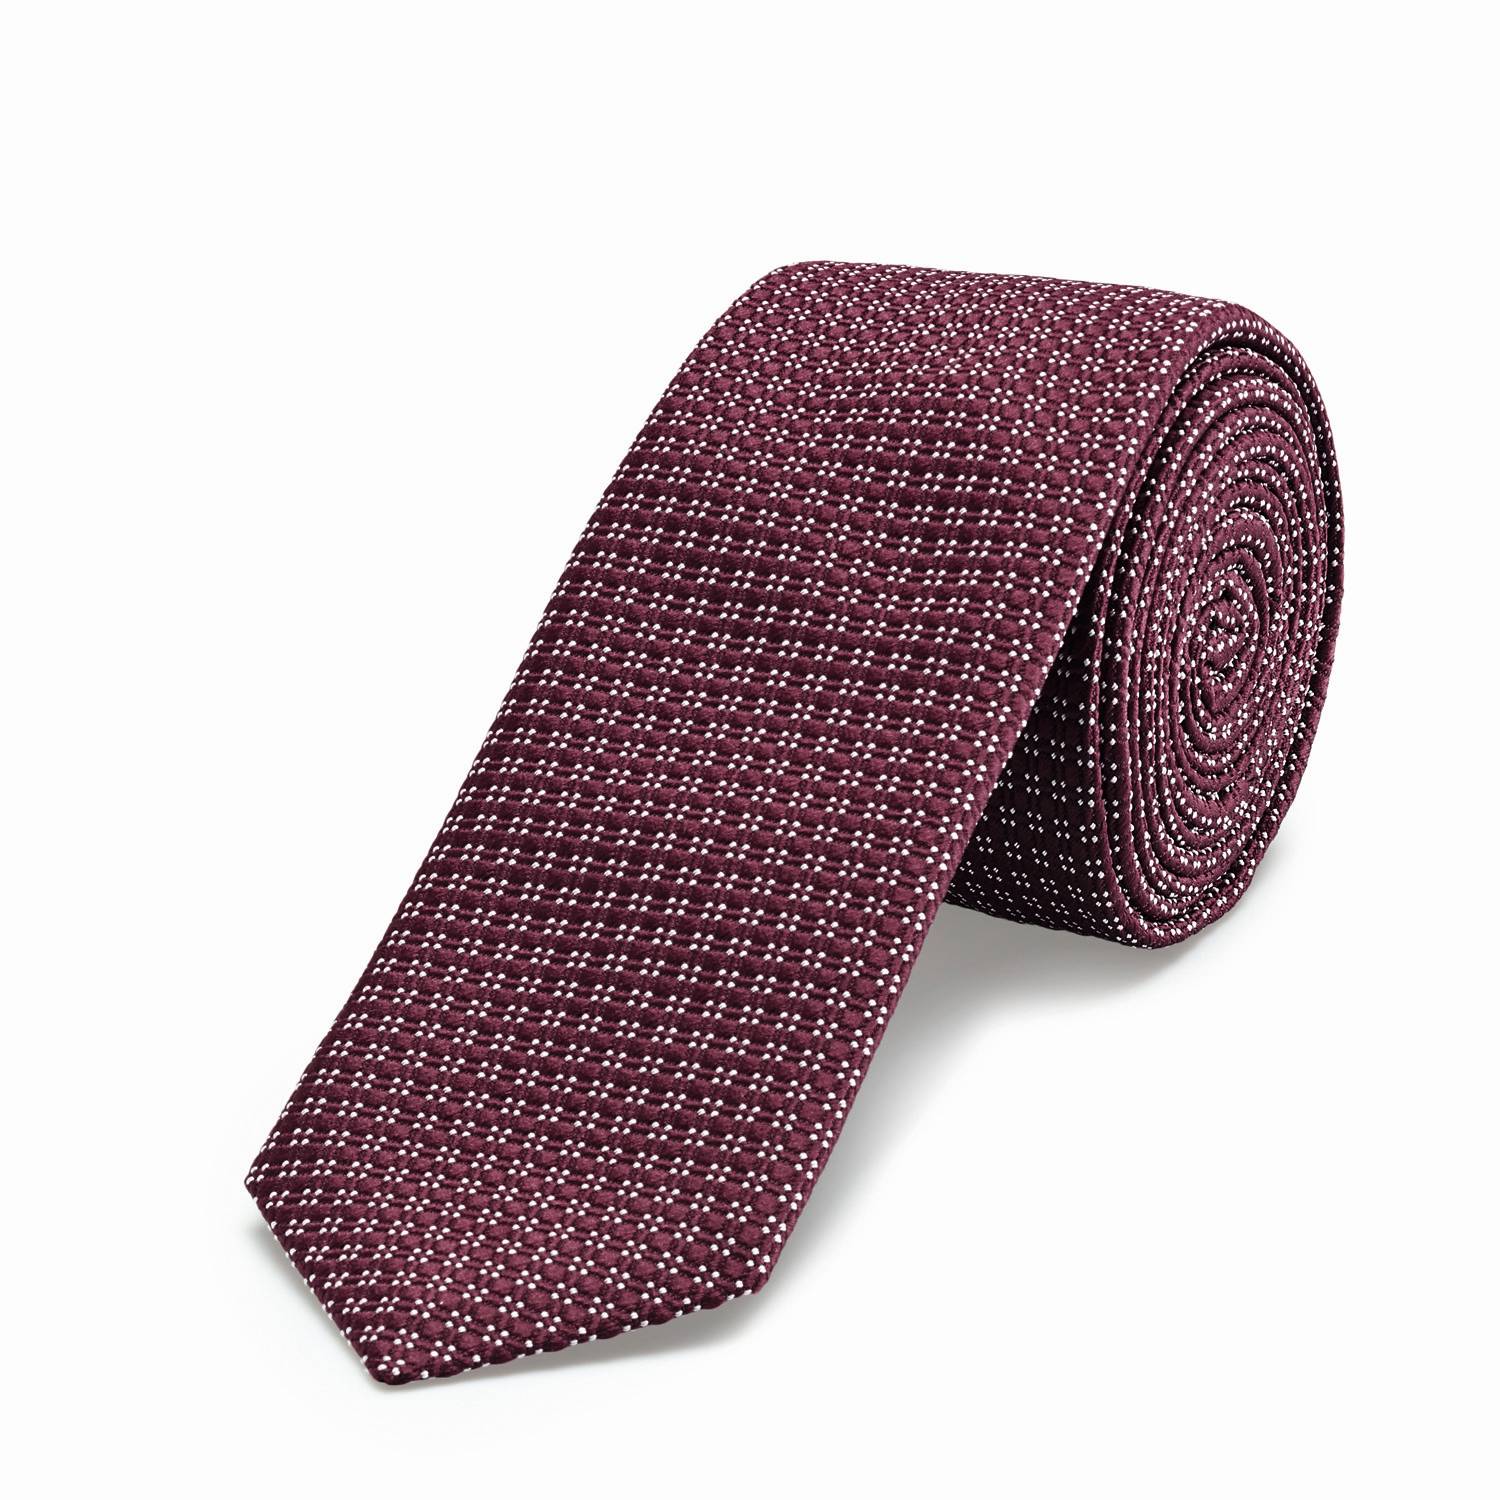 Tie slimline with pattern